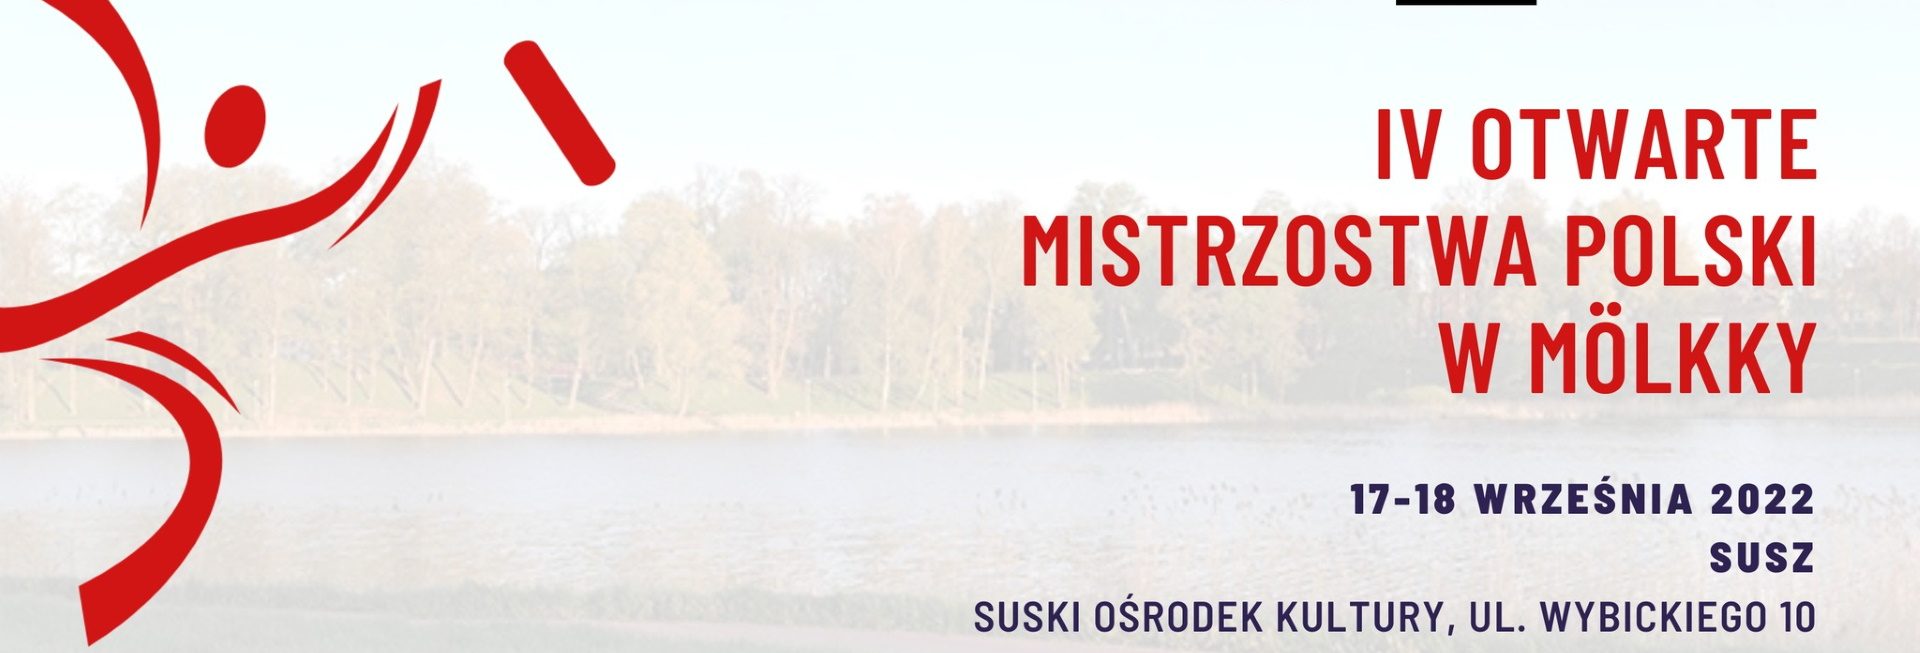 Plakat zapraszający do miejscowości Susz na IV Otwarte Mistrzostwa Polski w Mölkky SUSZ 2022.